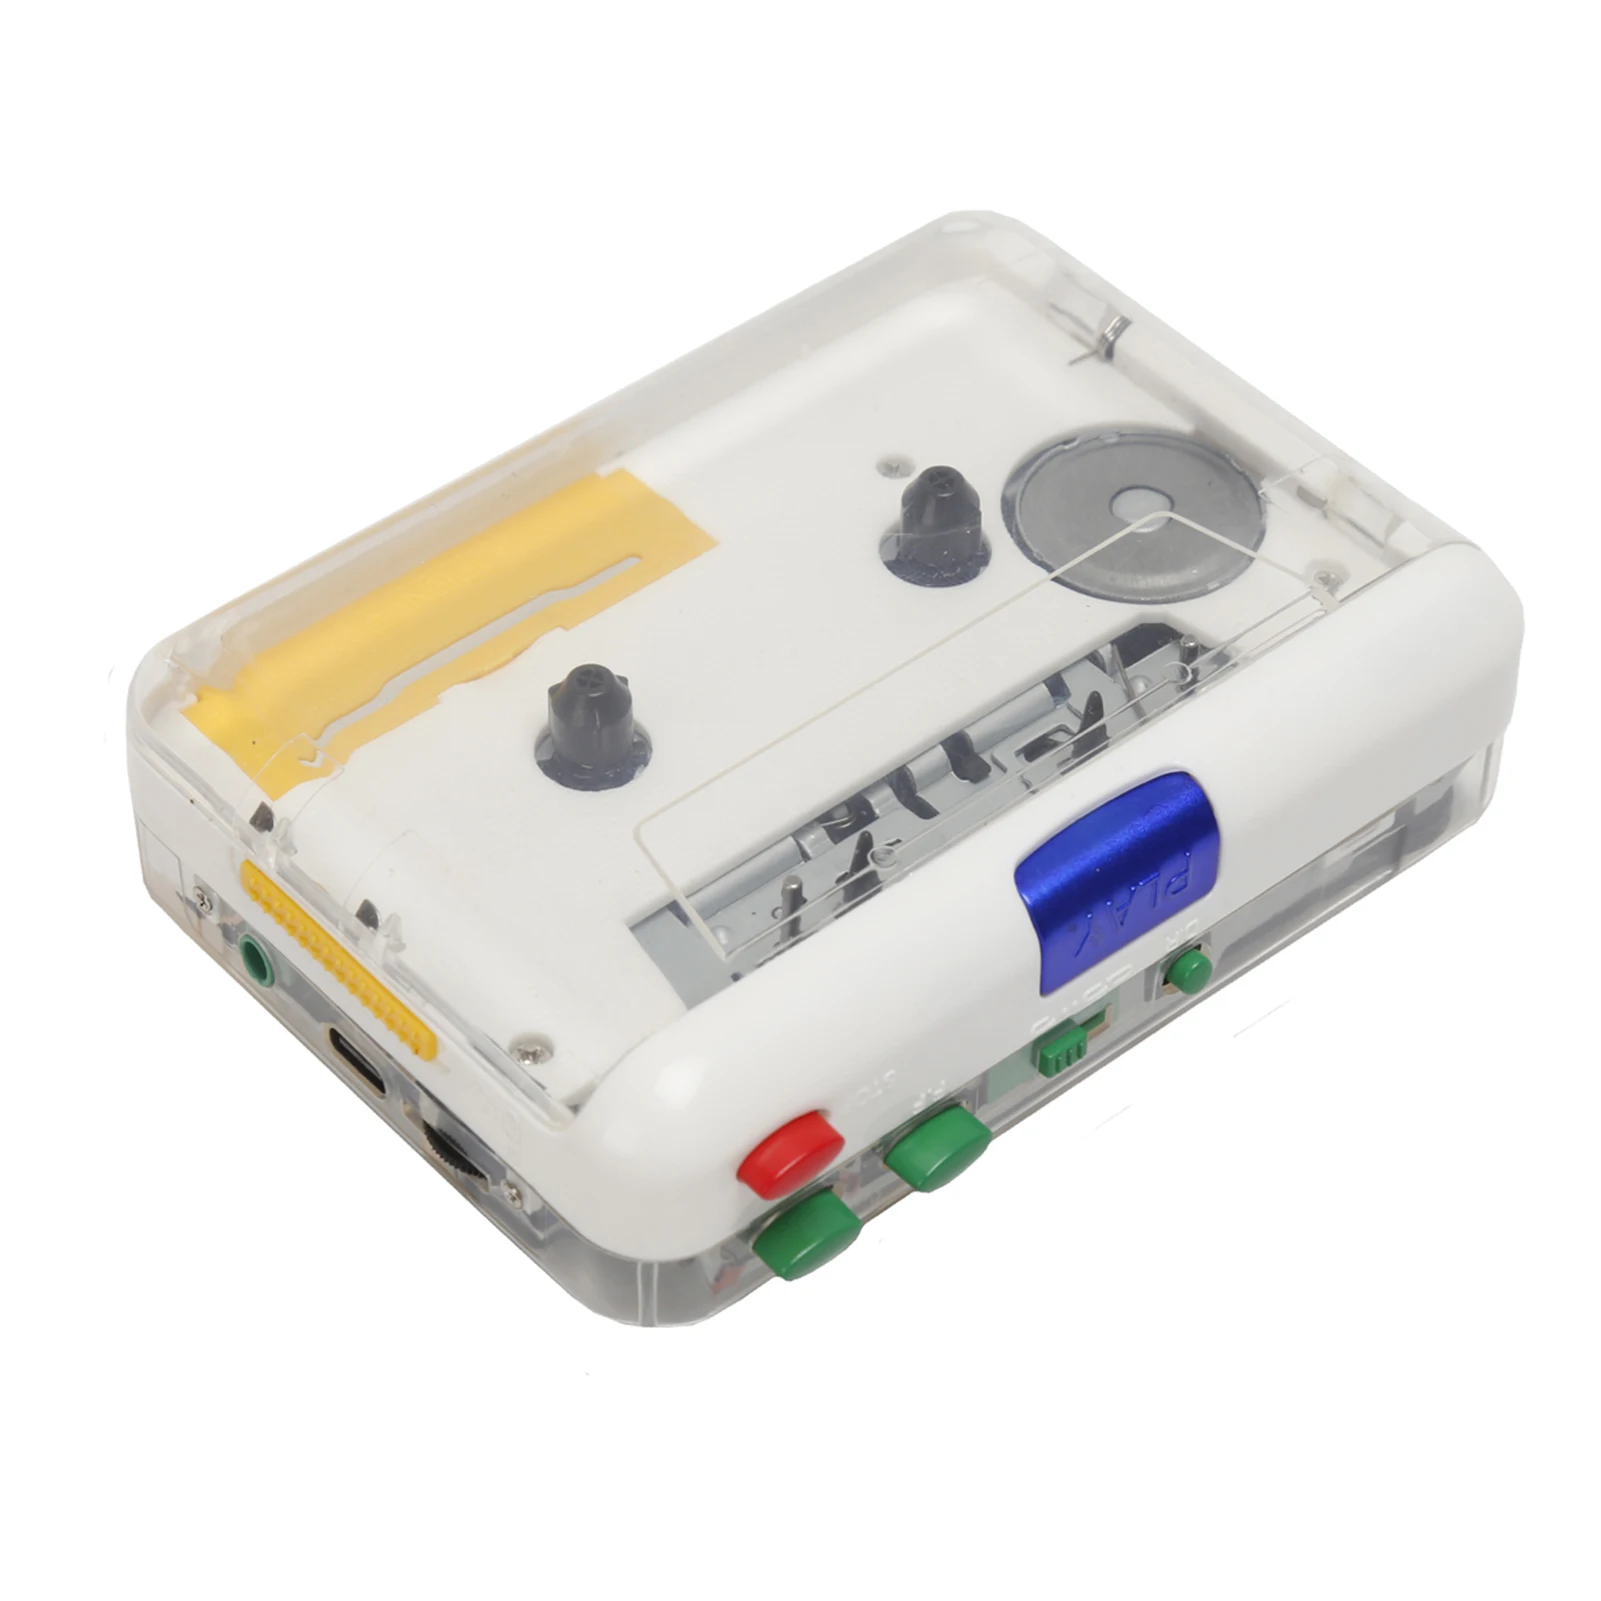 

Портативный кассета TON010S для MP3-плеера, мини-USB ленточный mp3-плеер, конвертер с 3,5 мм вспомогательным входом, по, кассета компакт-дисков